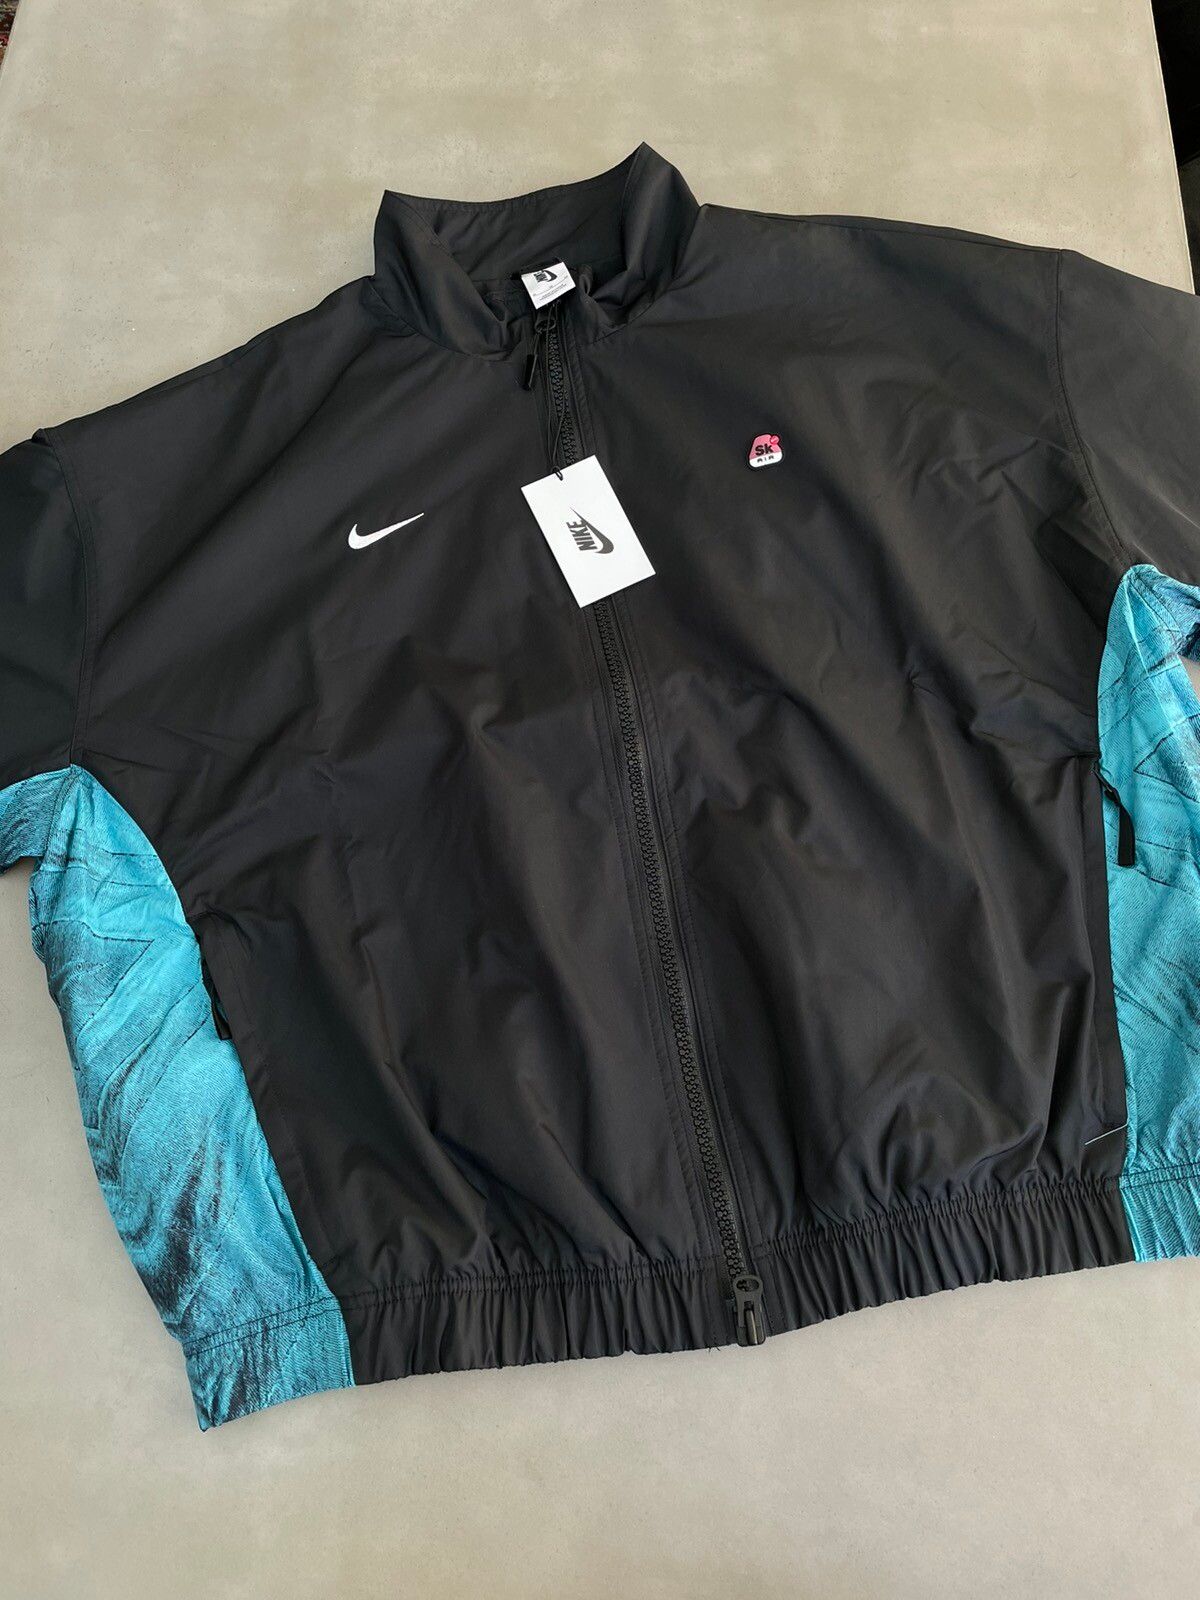 Nike Nike x Skepta SK Air Track Jacket | Grailed